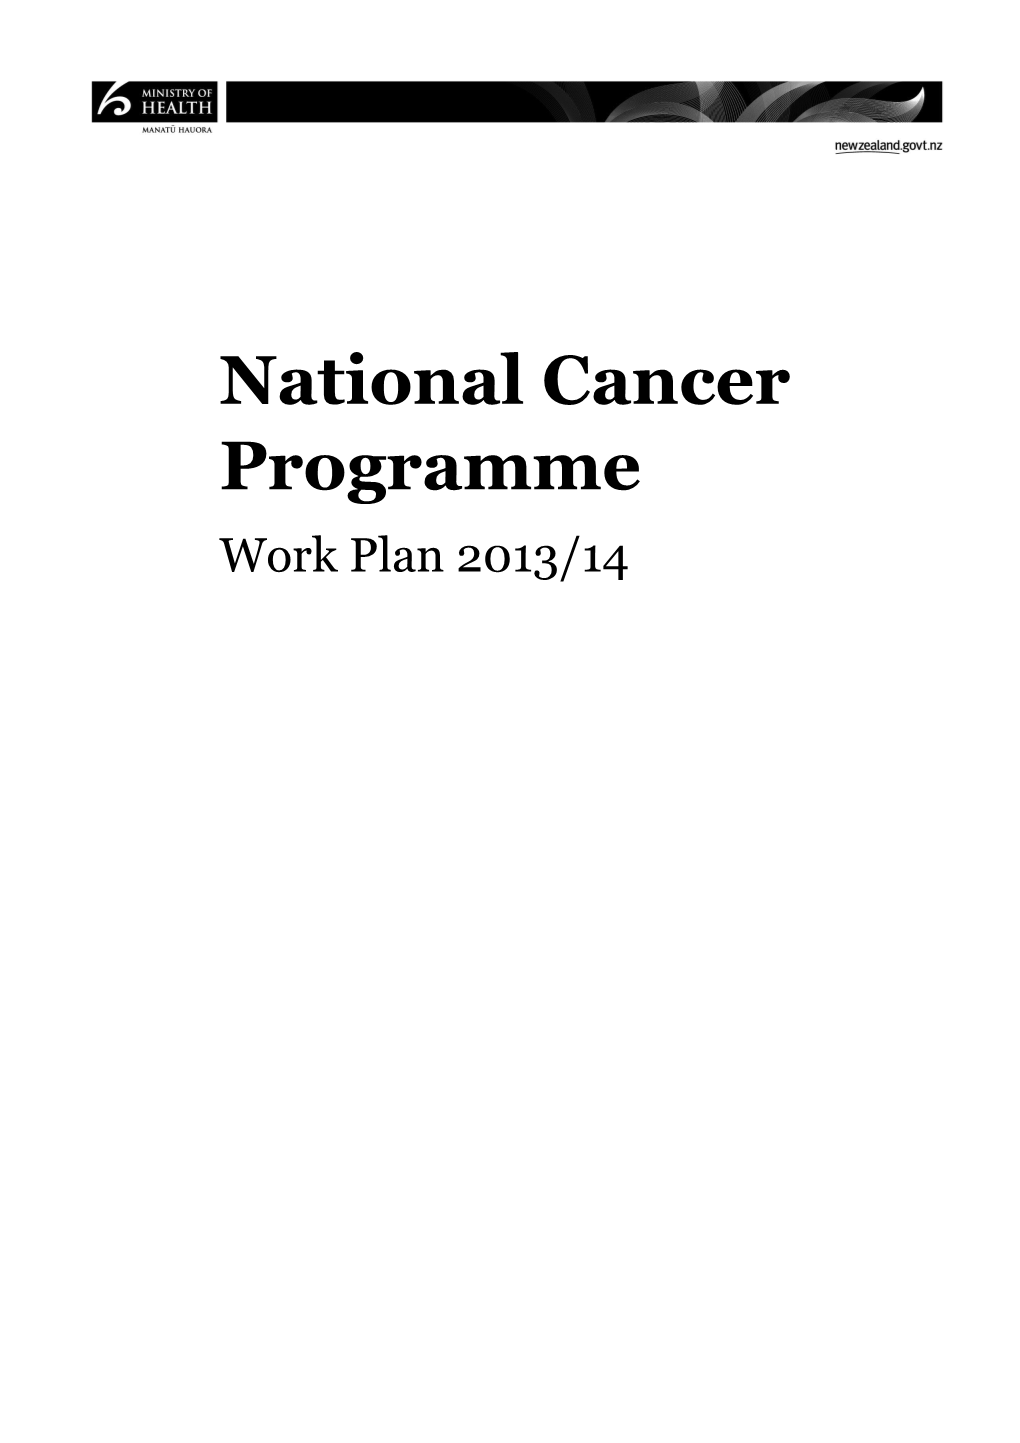 National Cancer Programme